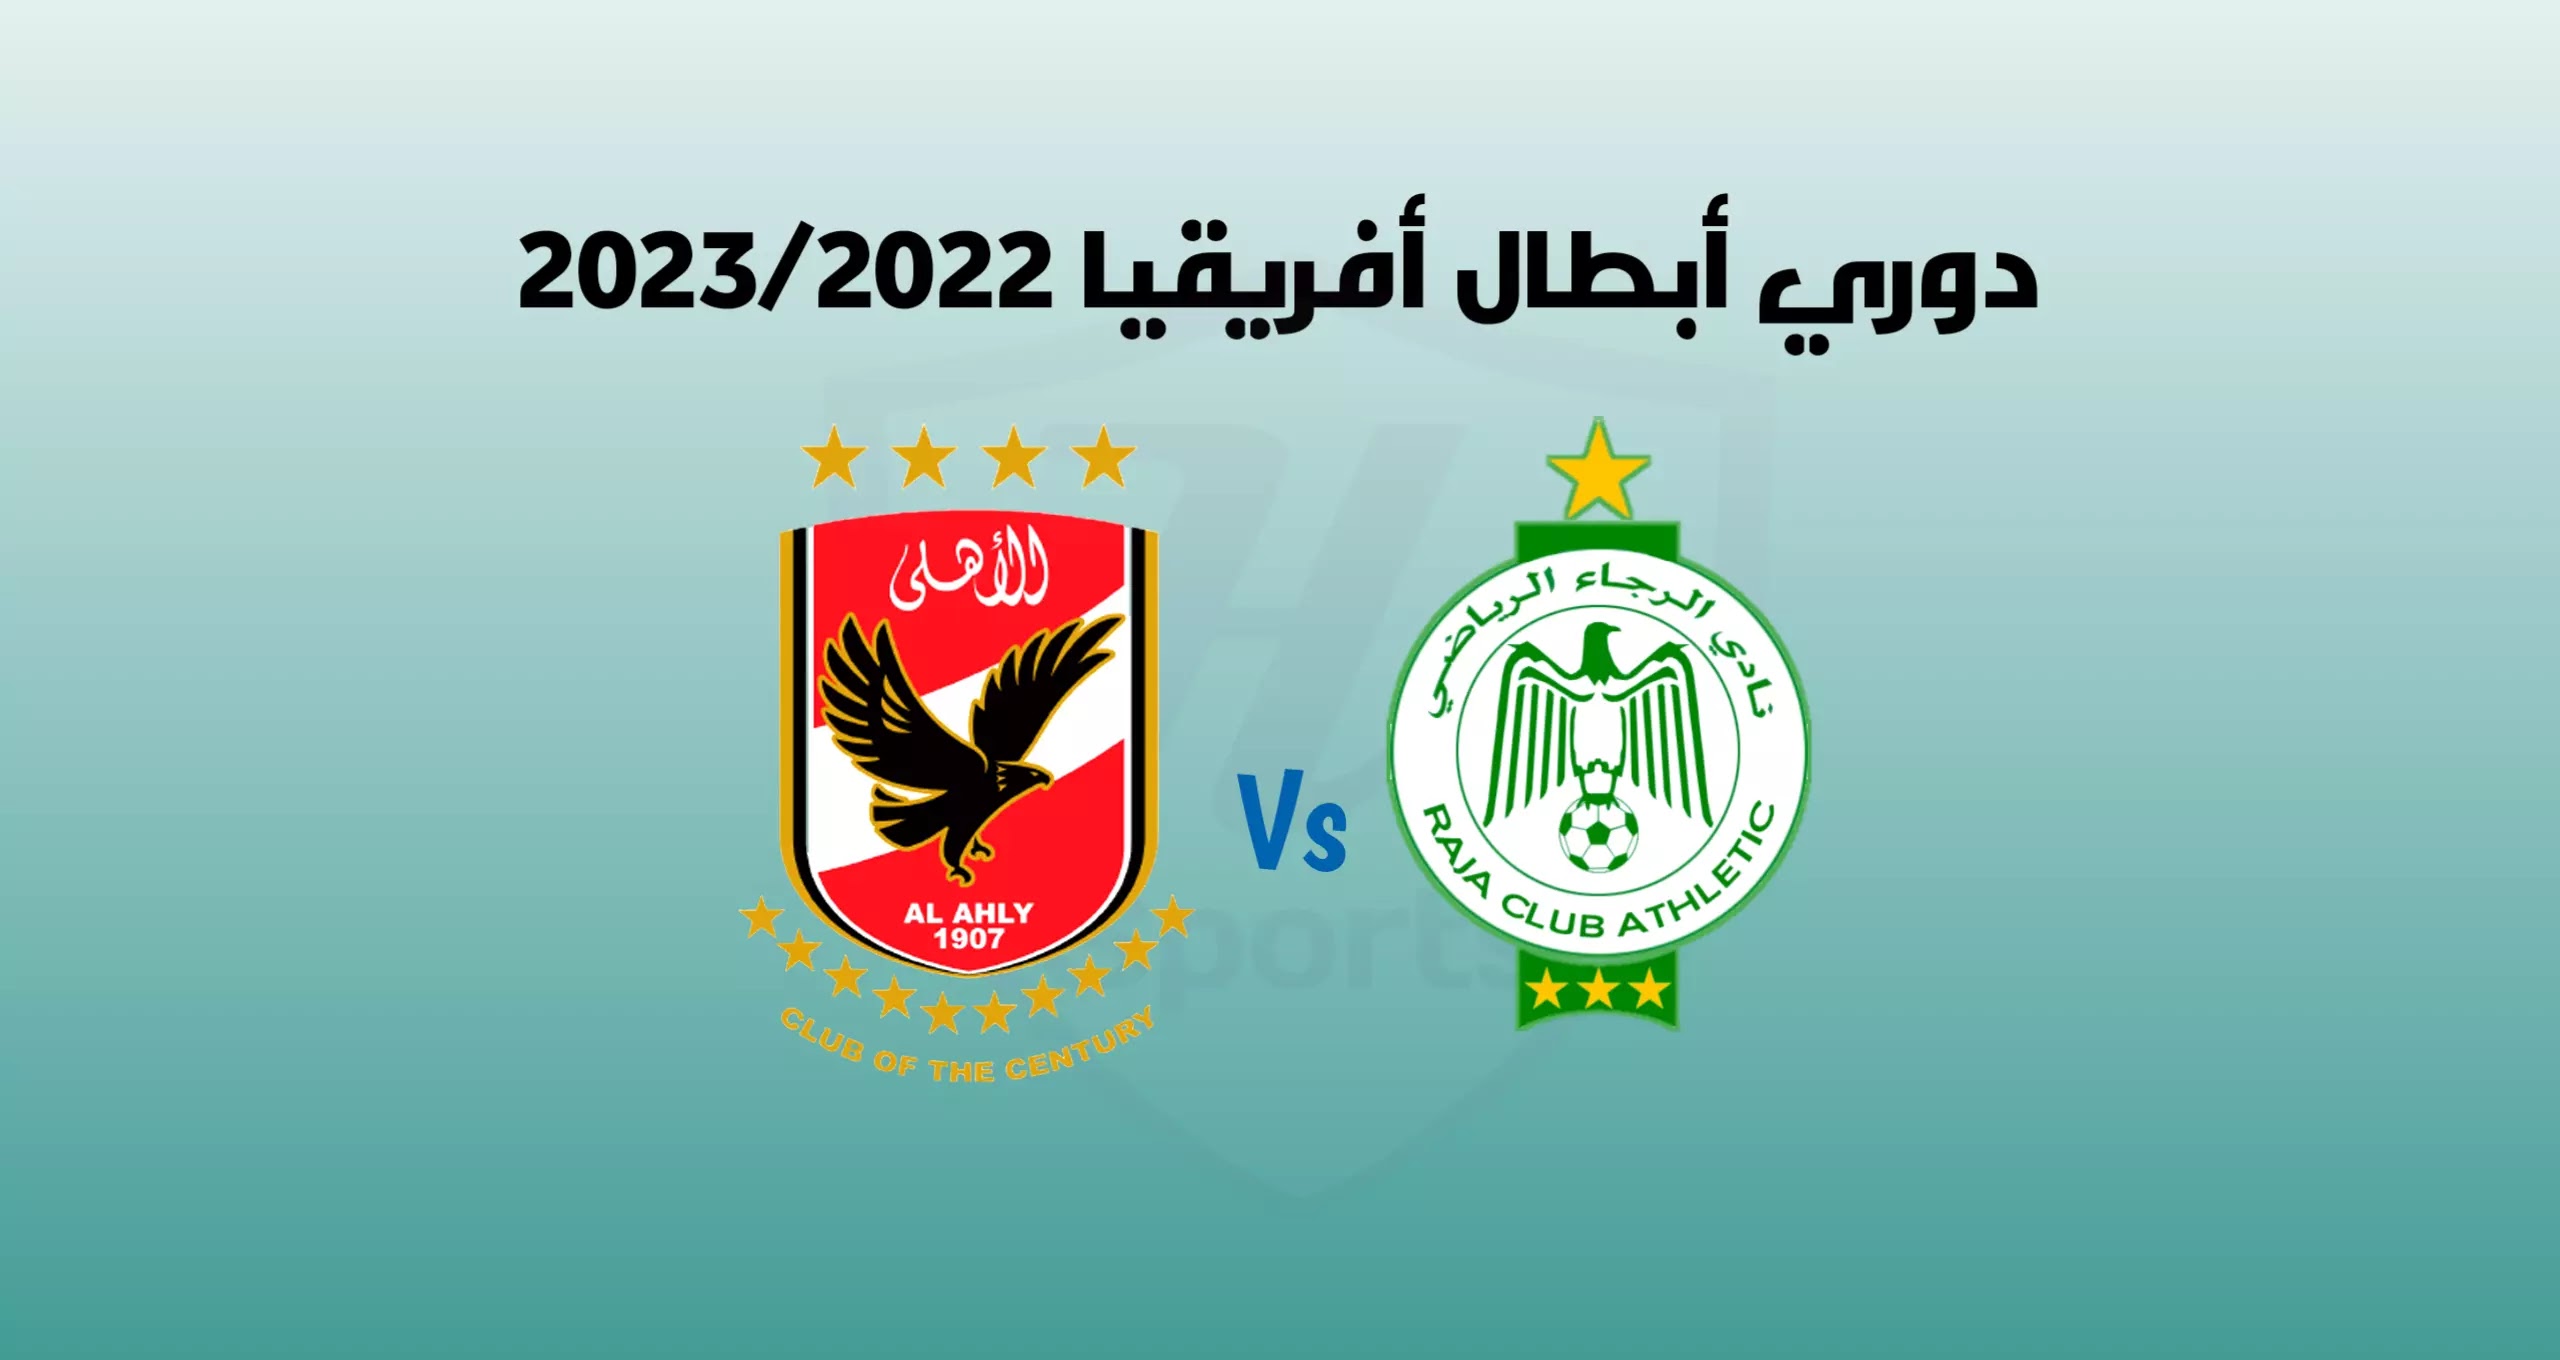 موعد مباراة الرجاء الرياضي والأهلي في دوري أبطال أفريقيا 2023/2022